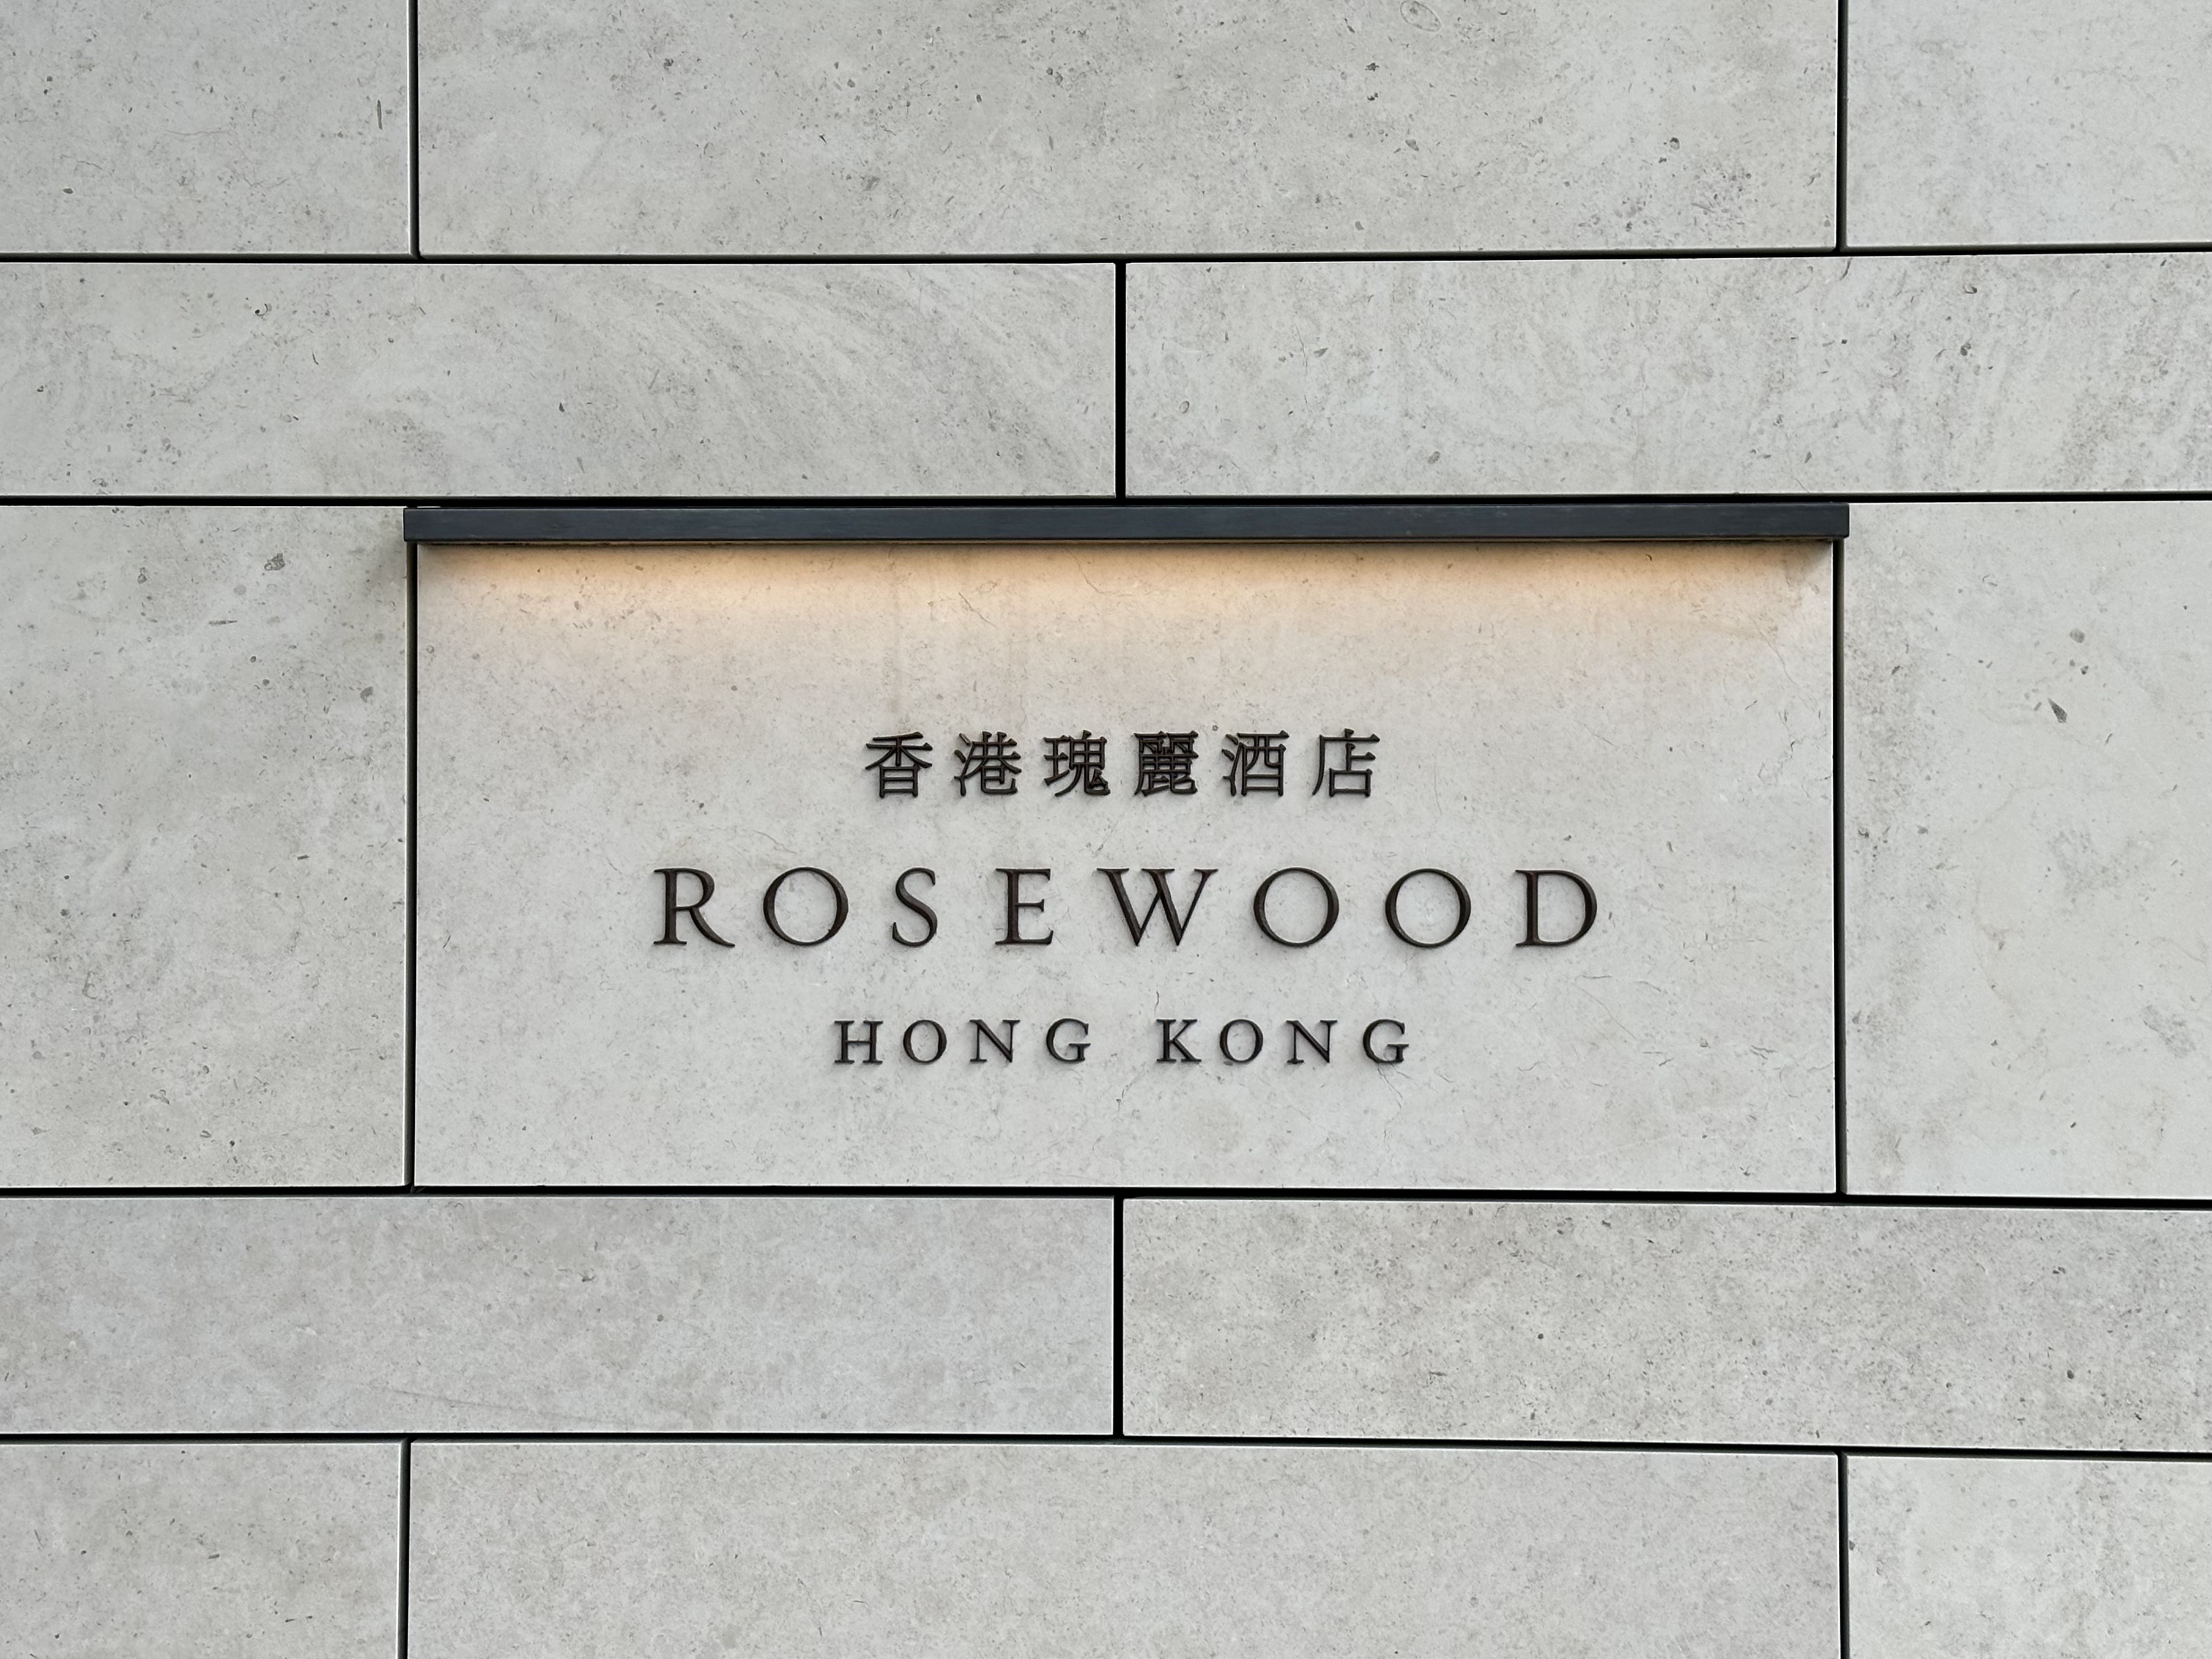 ۹ Rosewood Hong Kong άϵĴԼ